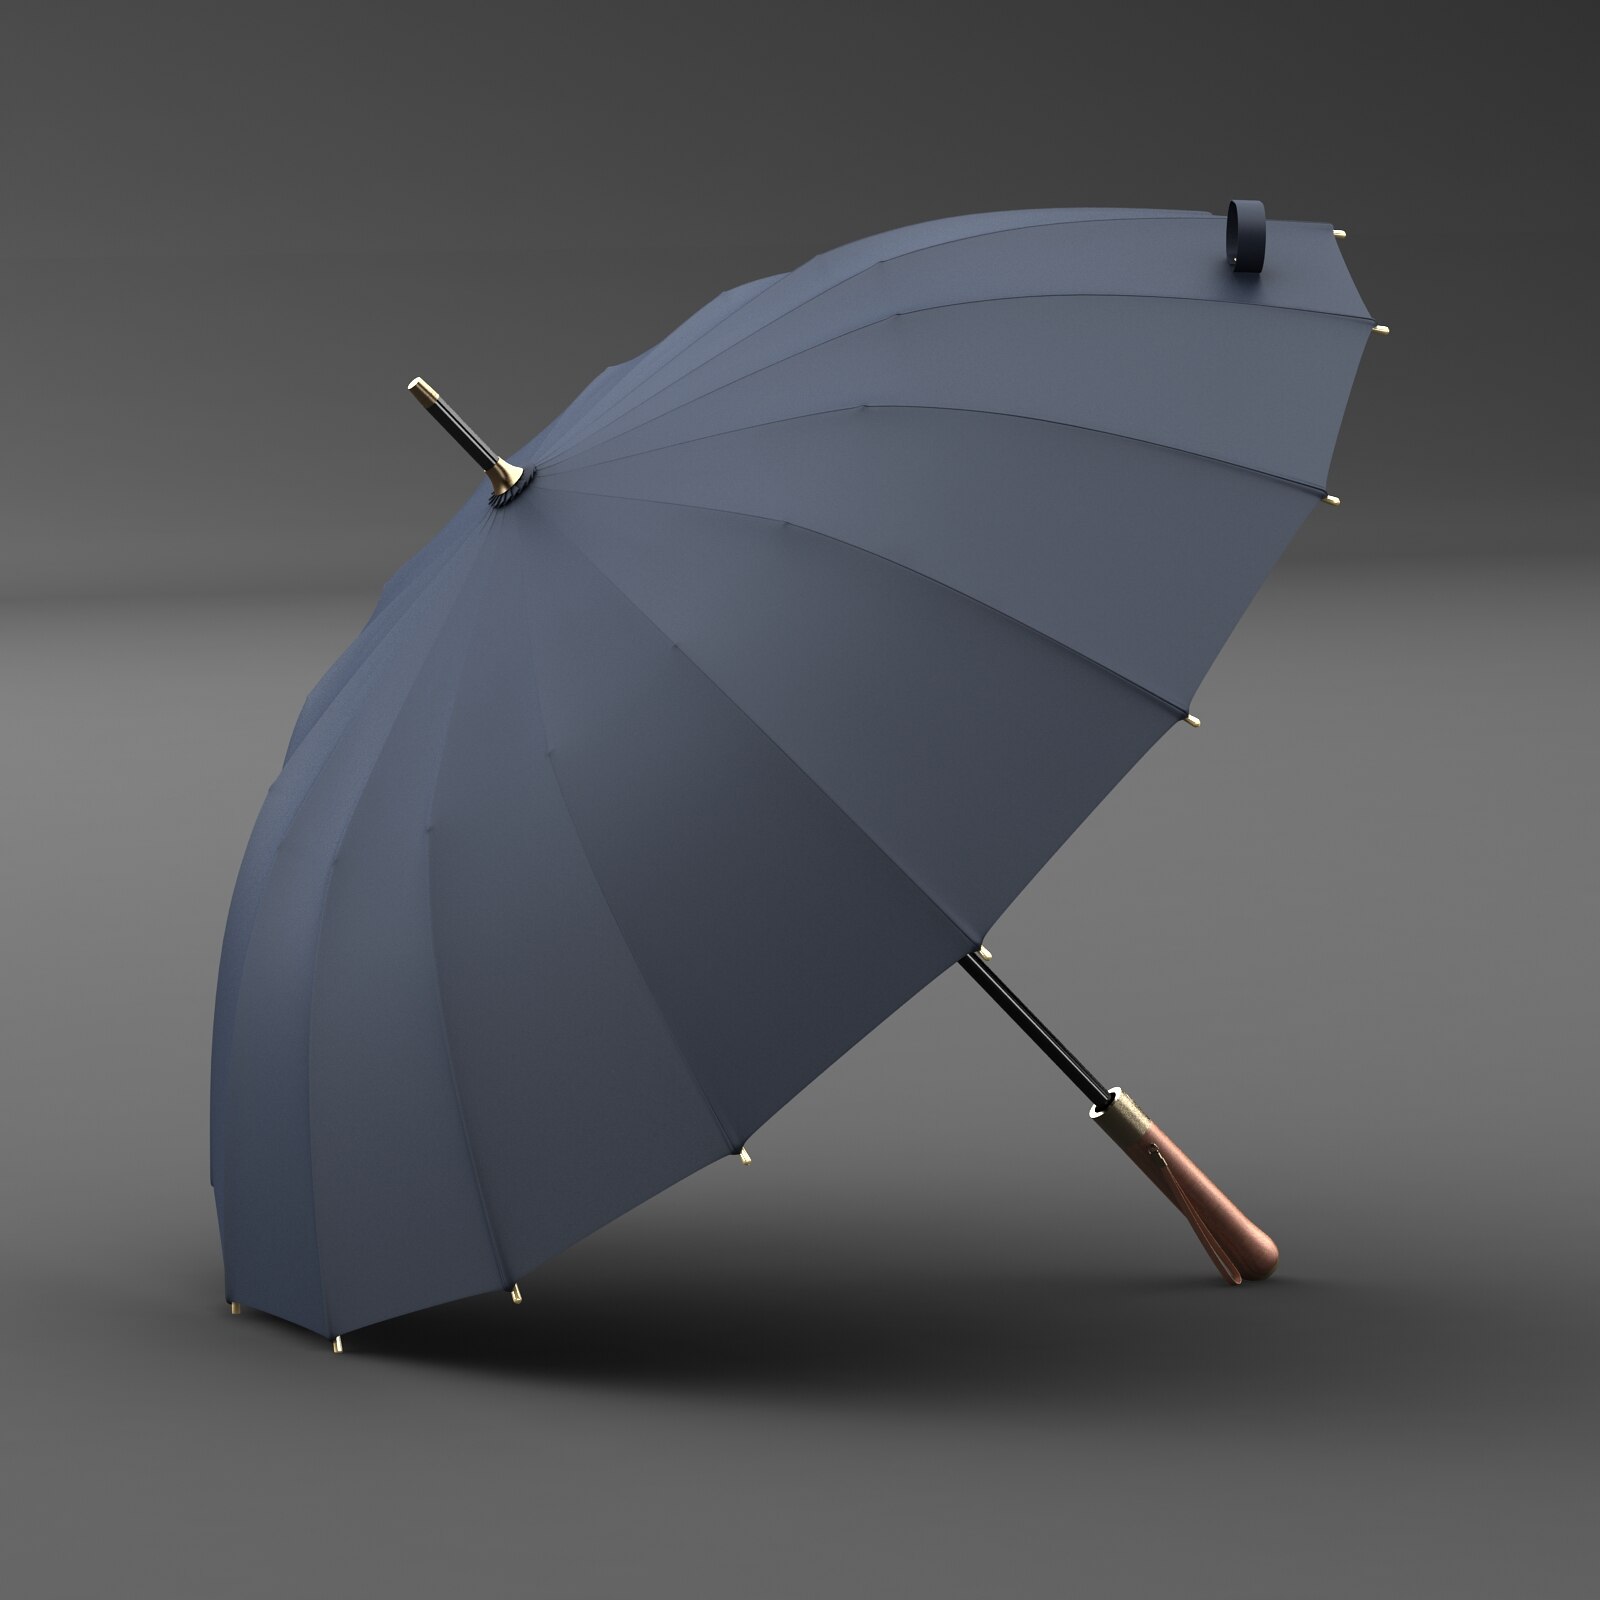 OLYCAT Luxury Mental Wooden Handle Umbrella 112cm Large Long Men Black Umbrellas 16 Ribs Windproof Rain Umbrella Paraguas: Gray